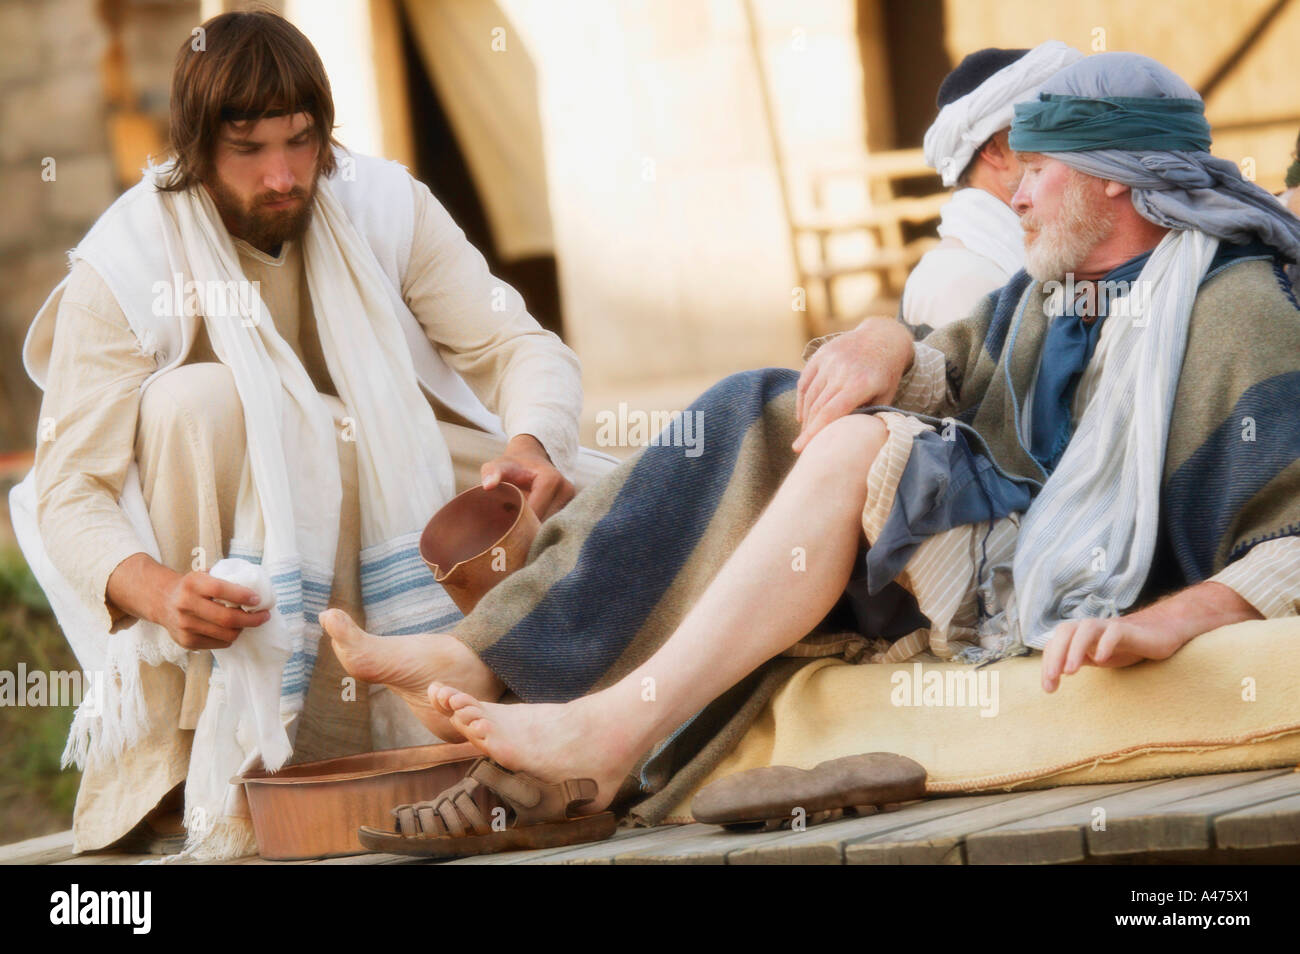 Jesus washes feet Stock Photo